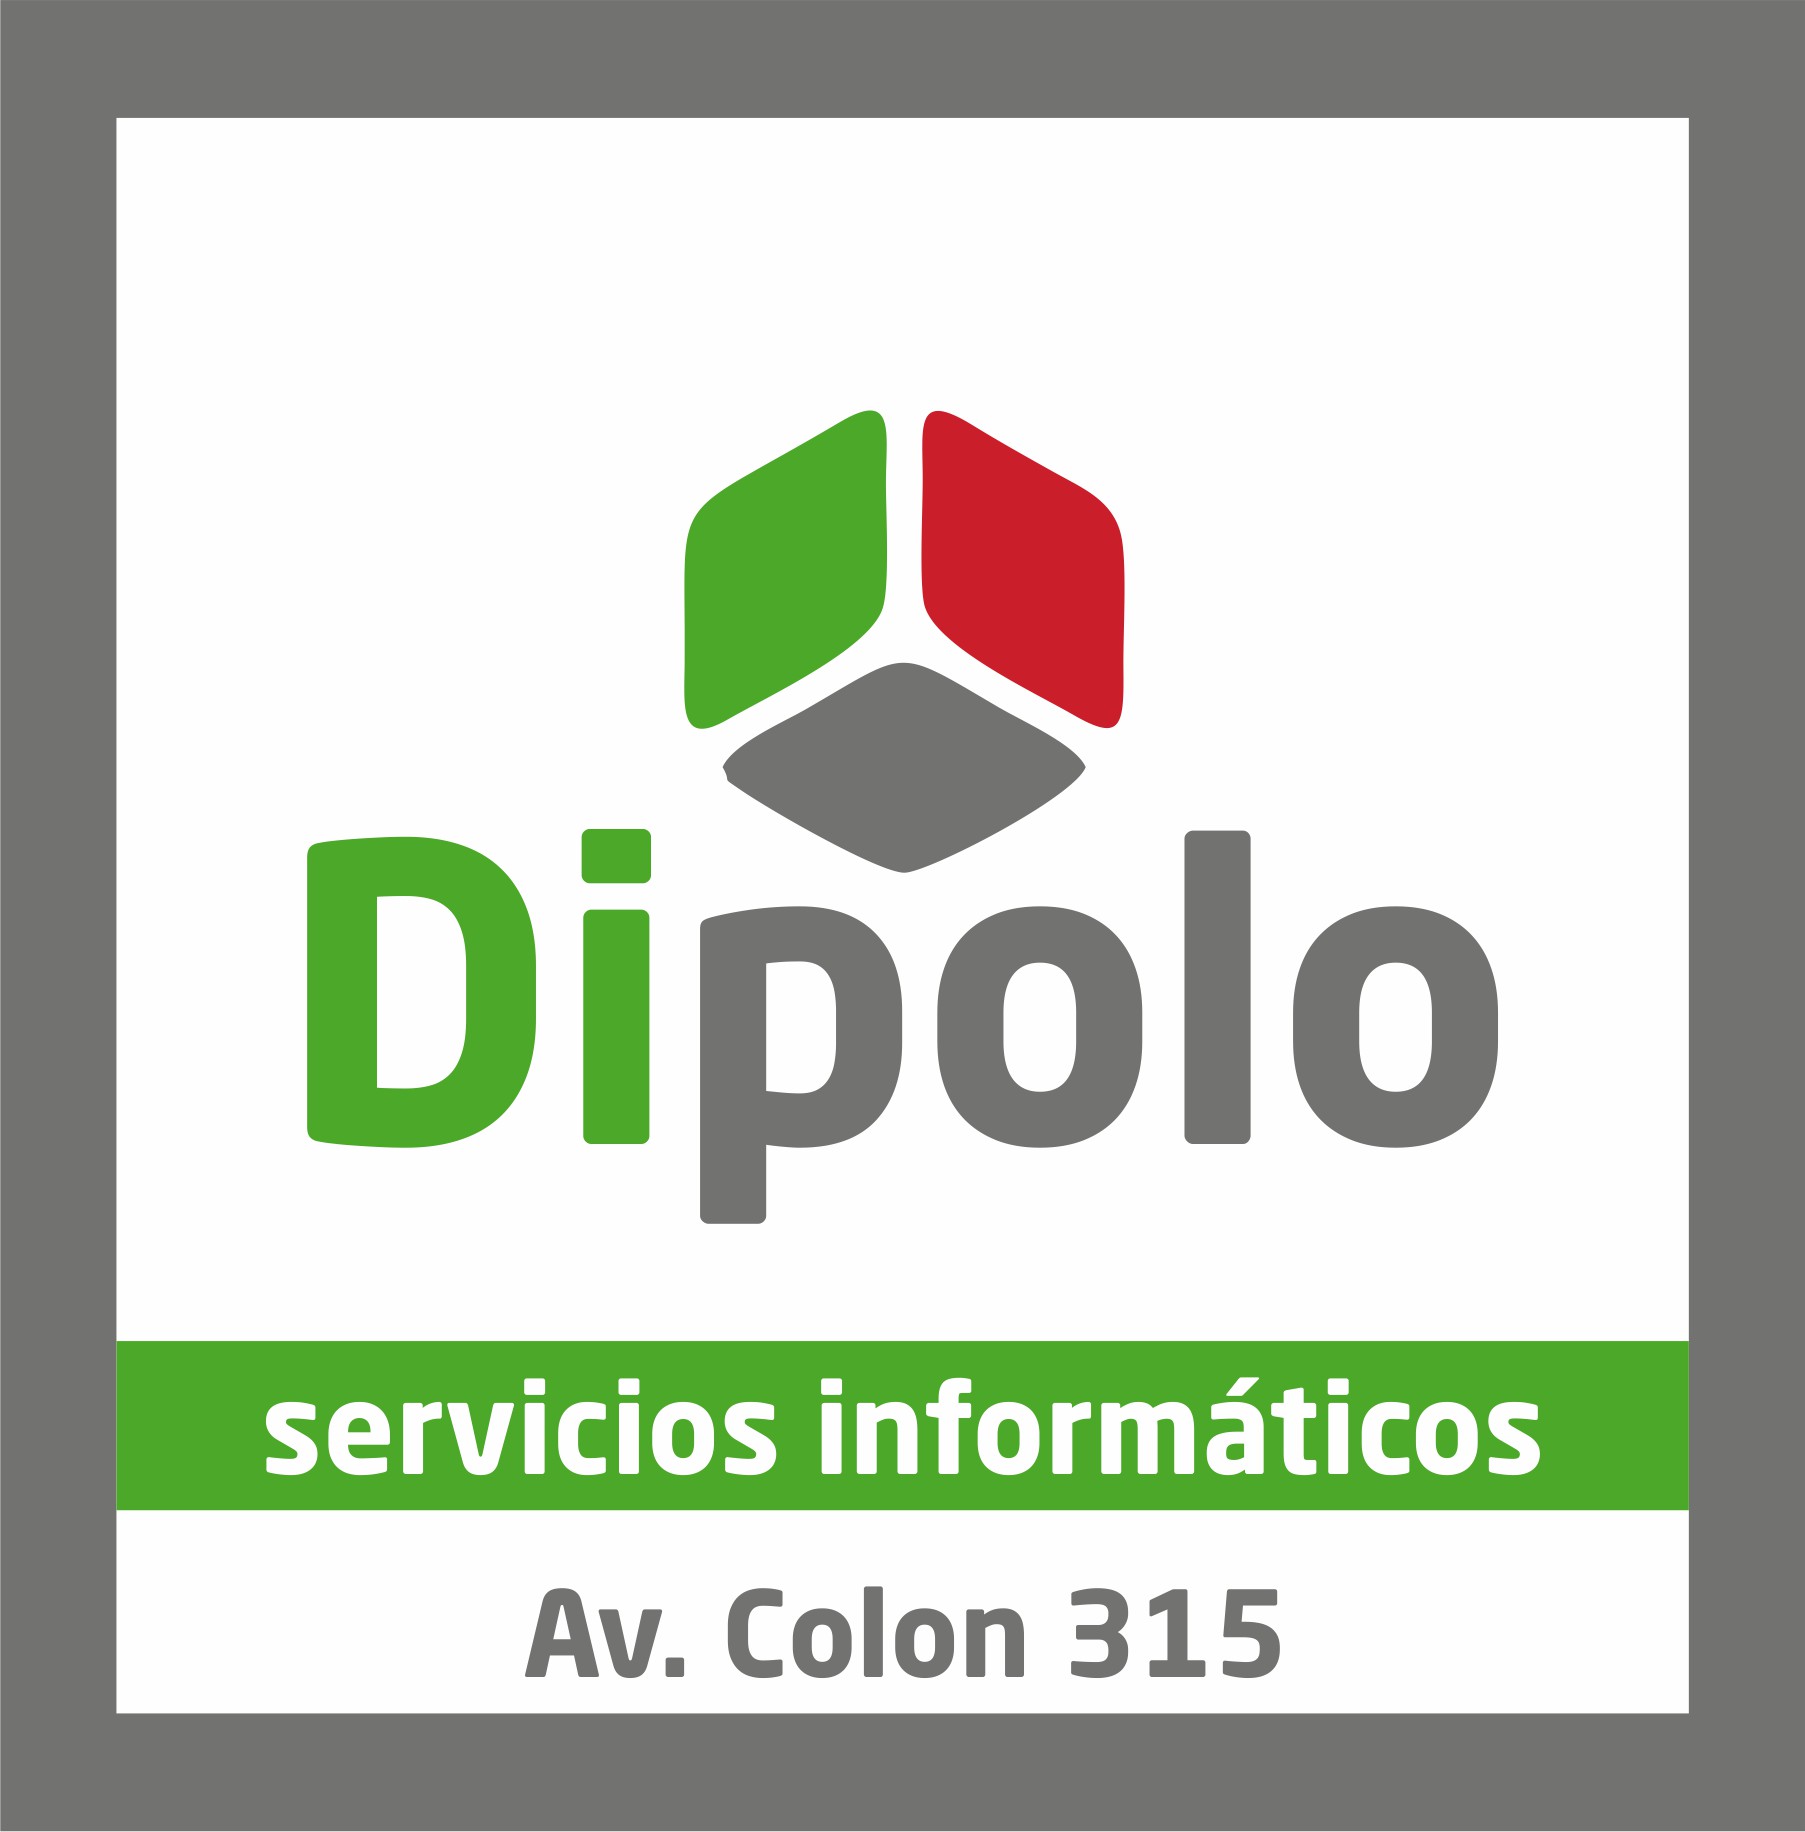 Dipolo Servicios Informaticos San Miguel de Tucumán